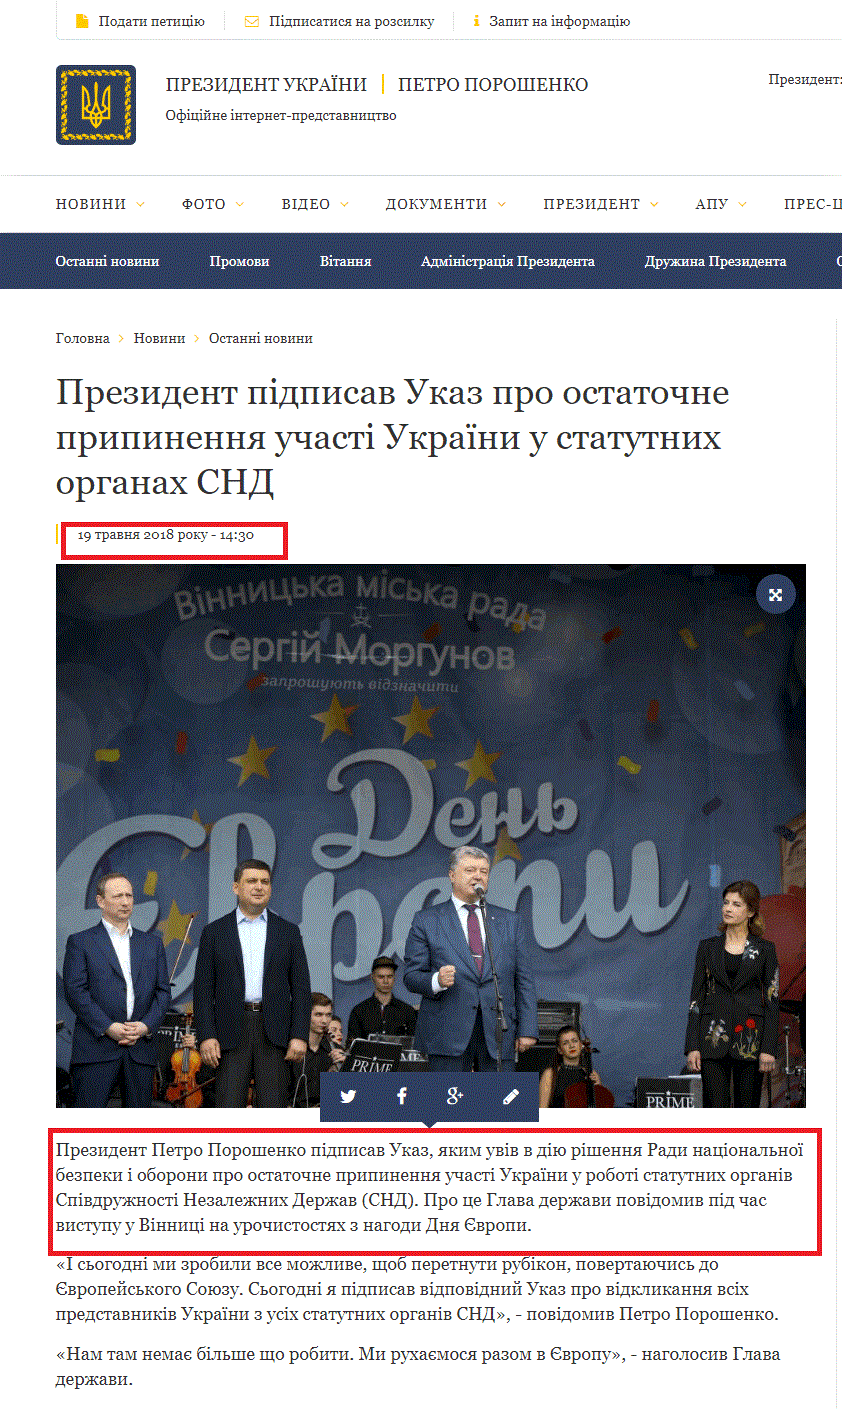 http://www.president.gov.ua/news/prezident-pidpisav-ukaz-pro-ostatochne-pripinennya-uchasti-u-47554